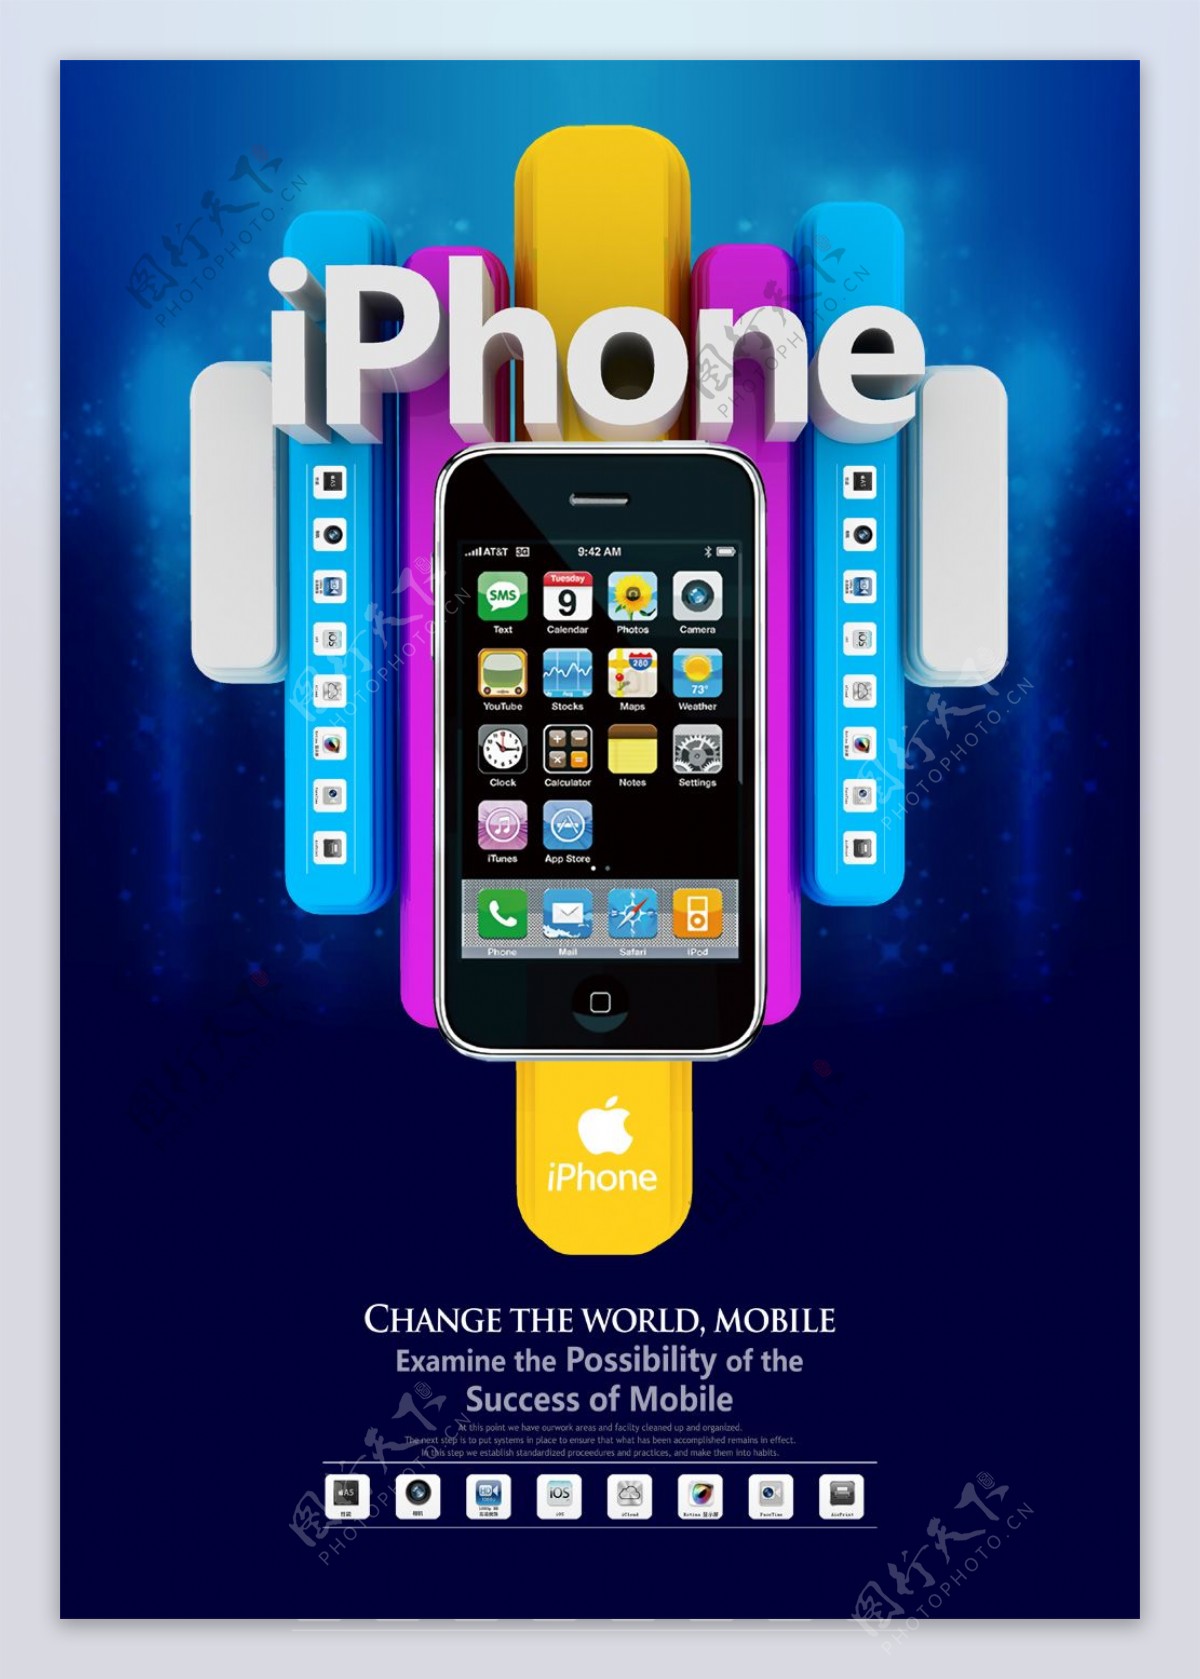 苹果iPhone上市广告PSD素材